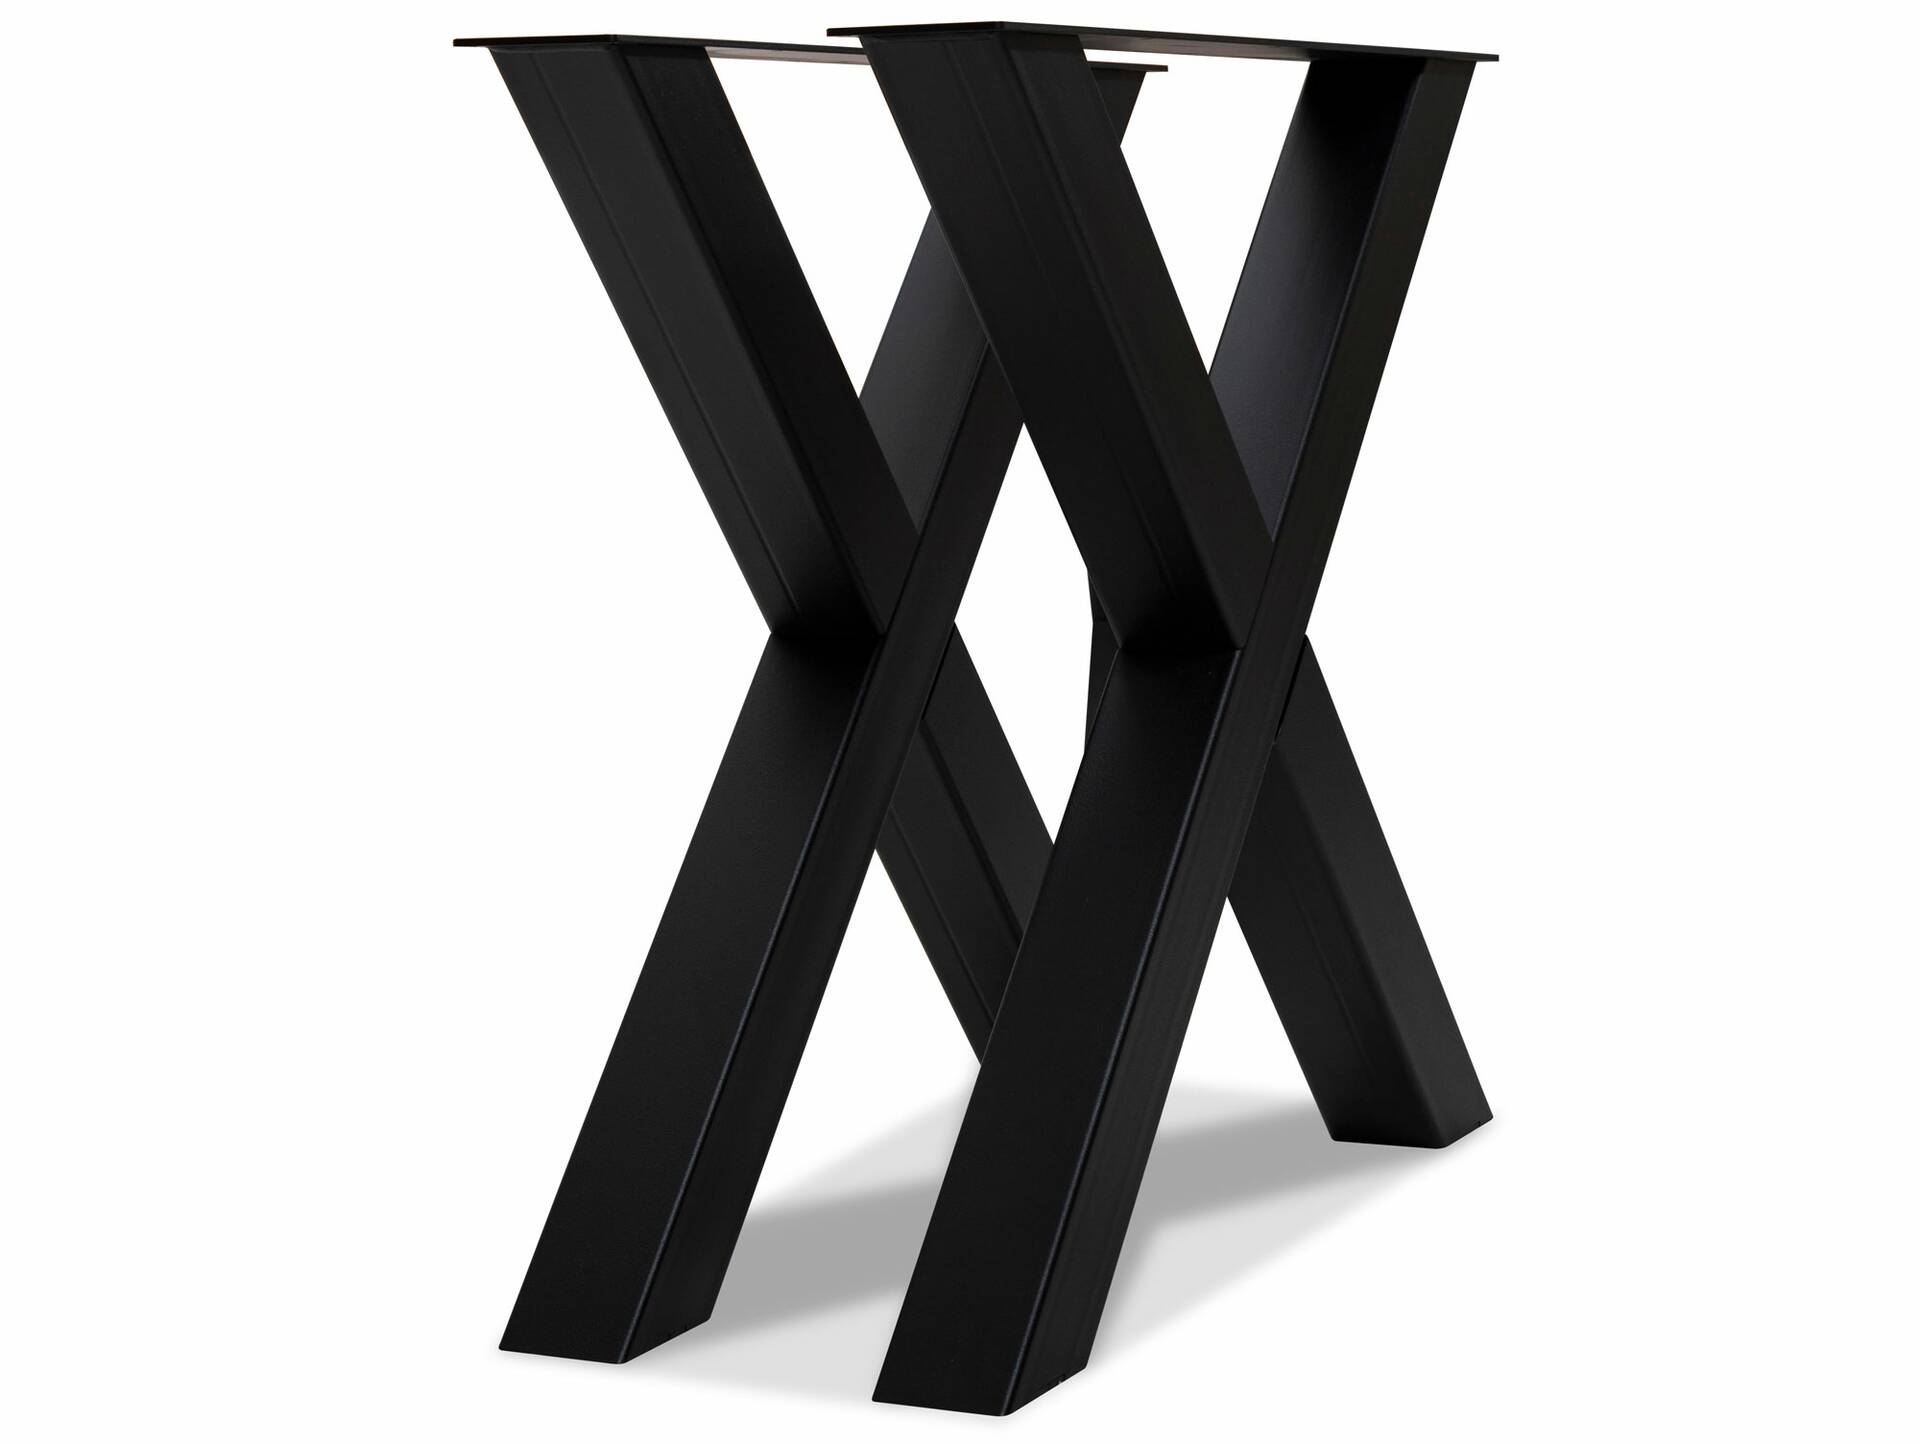 X-Bein für Esstisch, Material Stahl, schwarz 70 cm